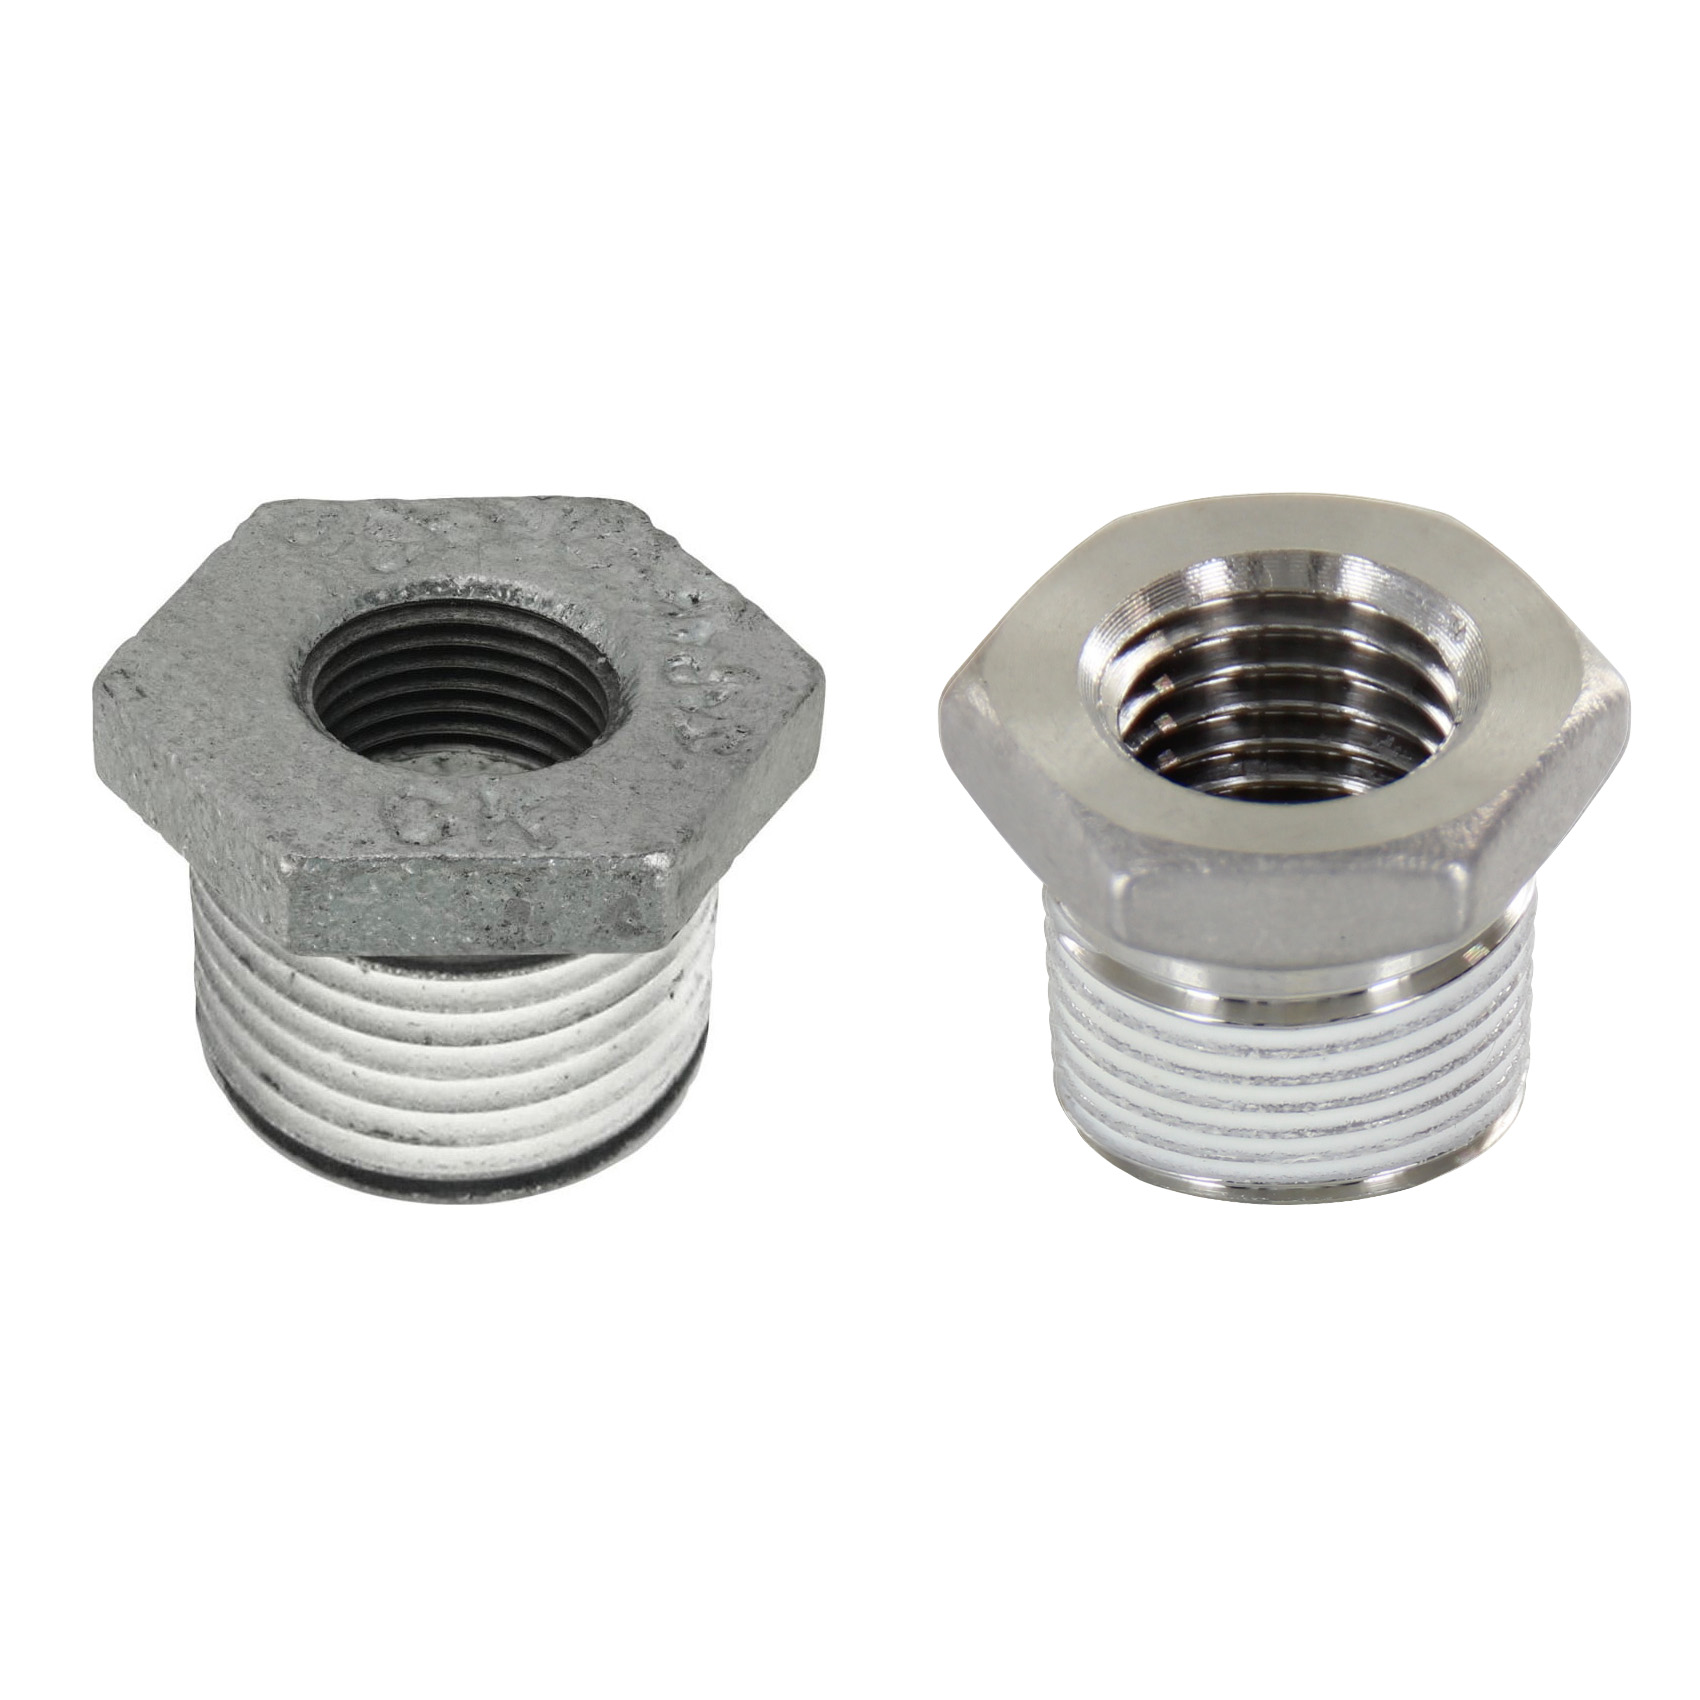 Low Pressure Screw Fittings - Thread Coated Type - Steel Pipe Fittings - Bushings SGCPB24